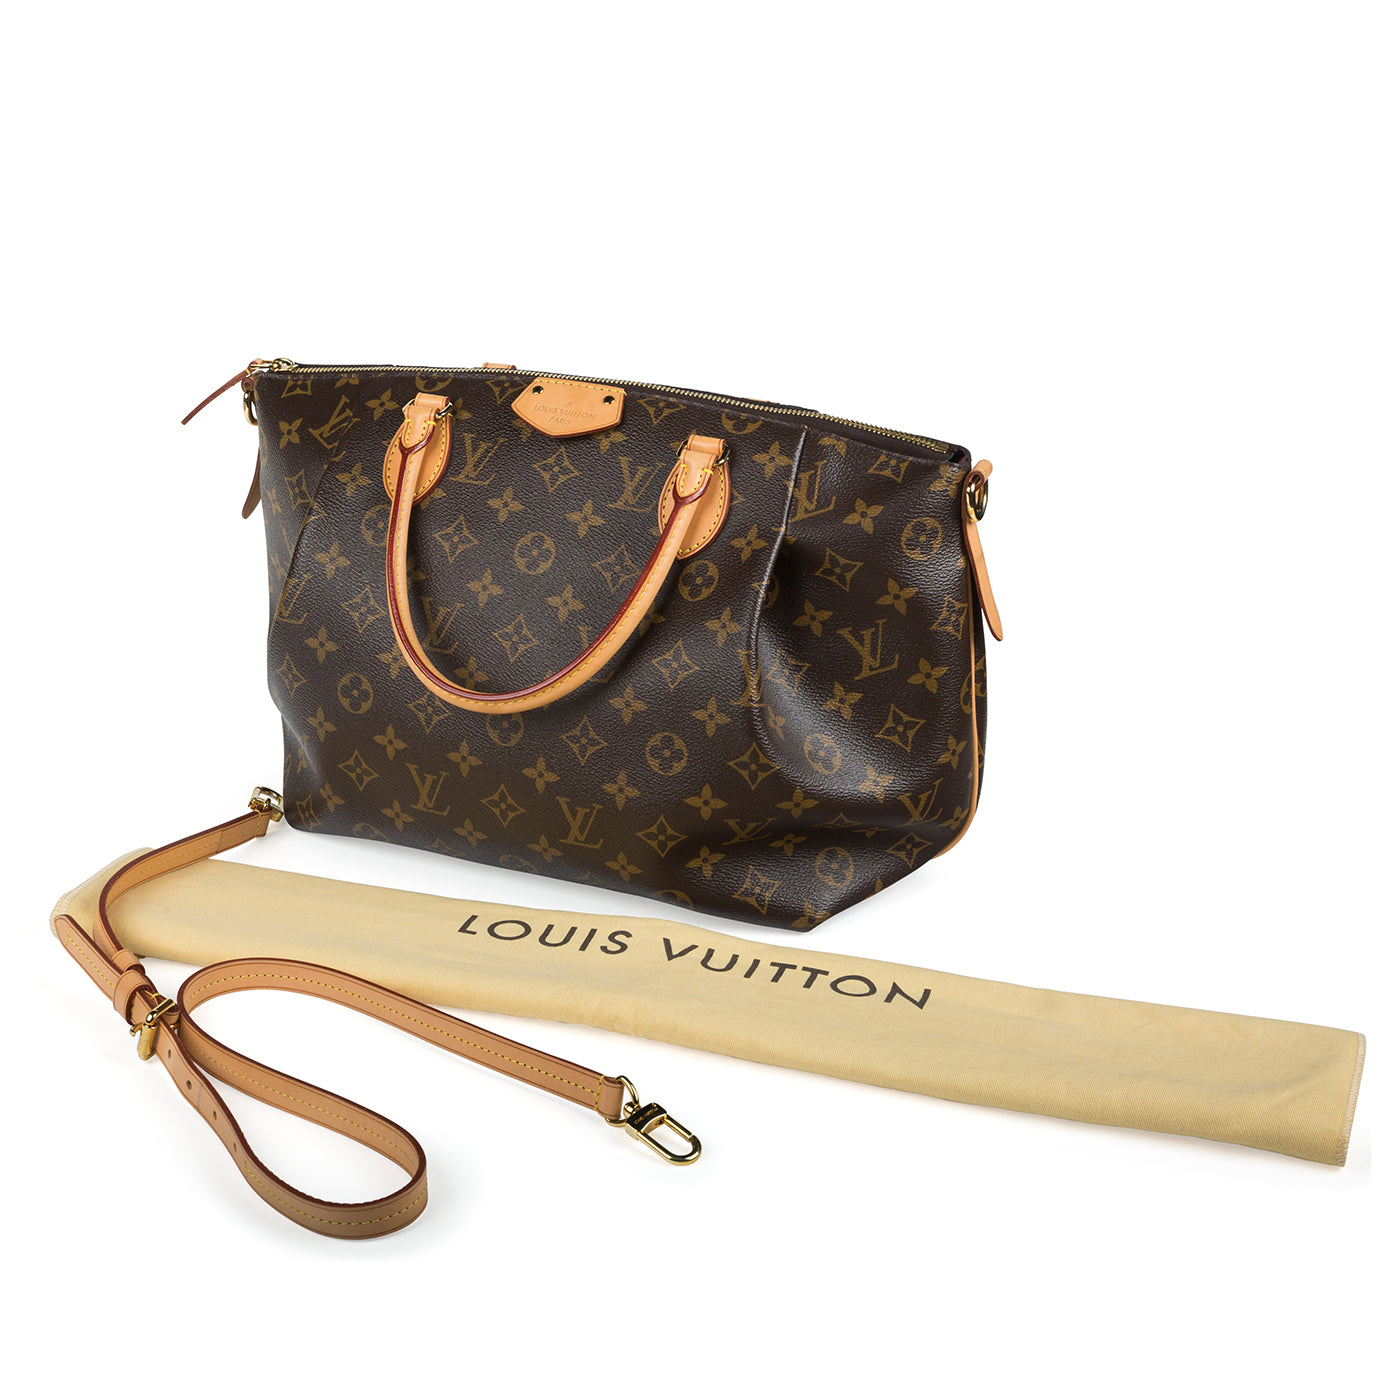 Love my Louis Vuitton Turenne MM